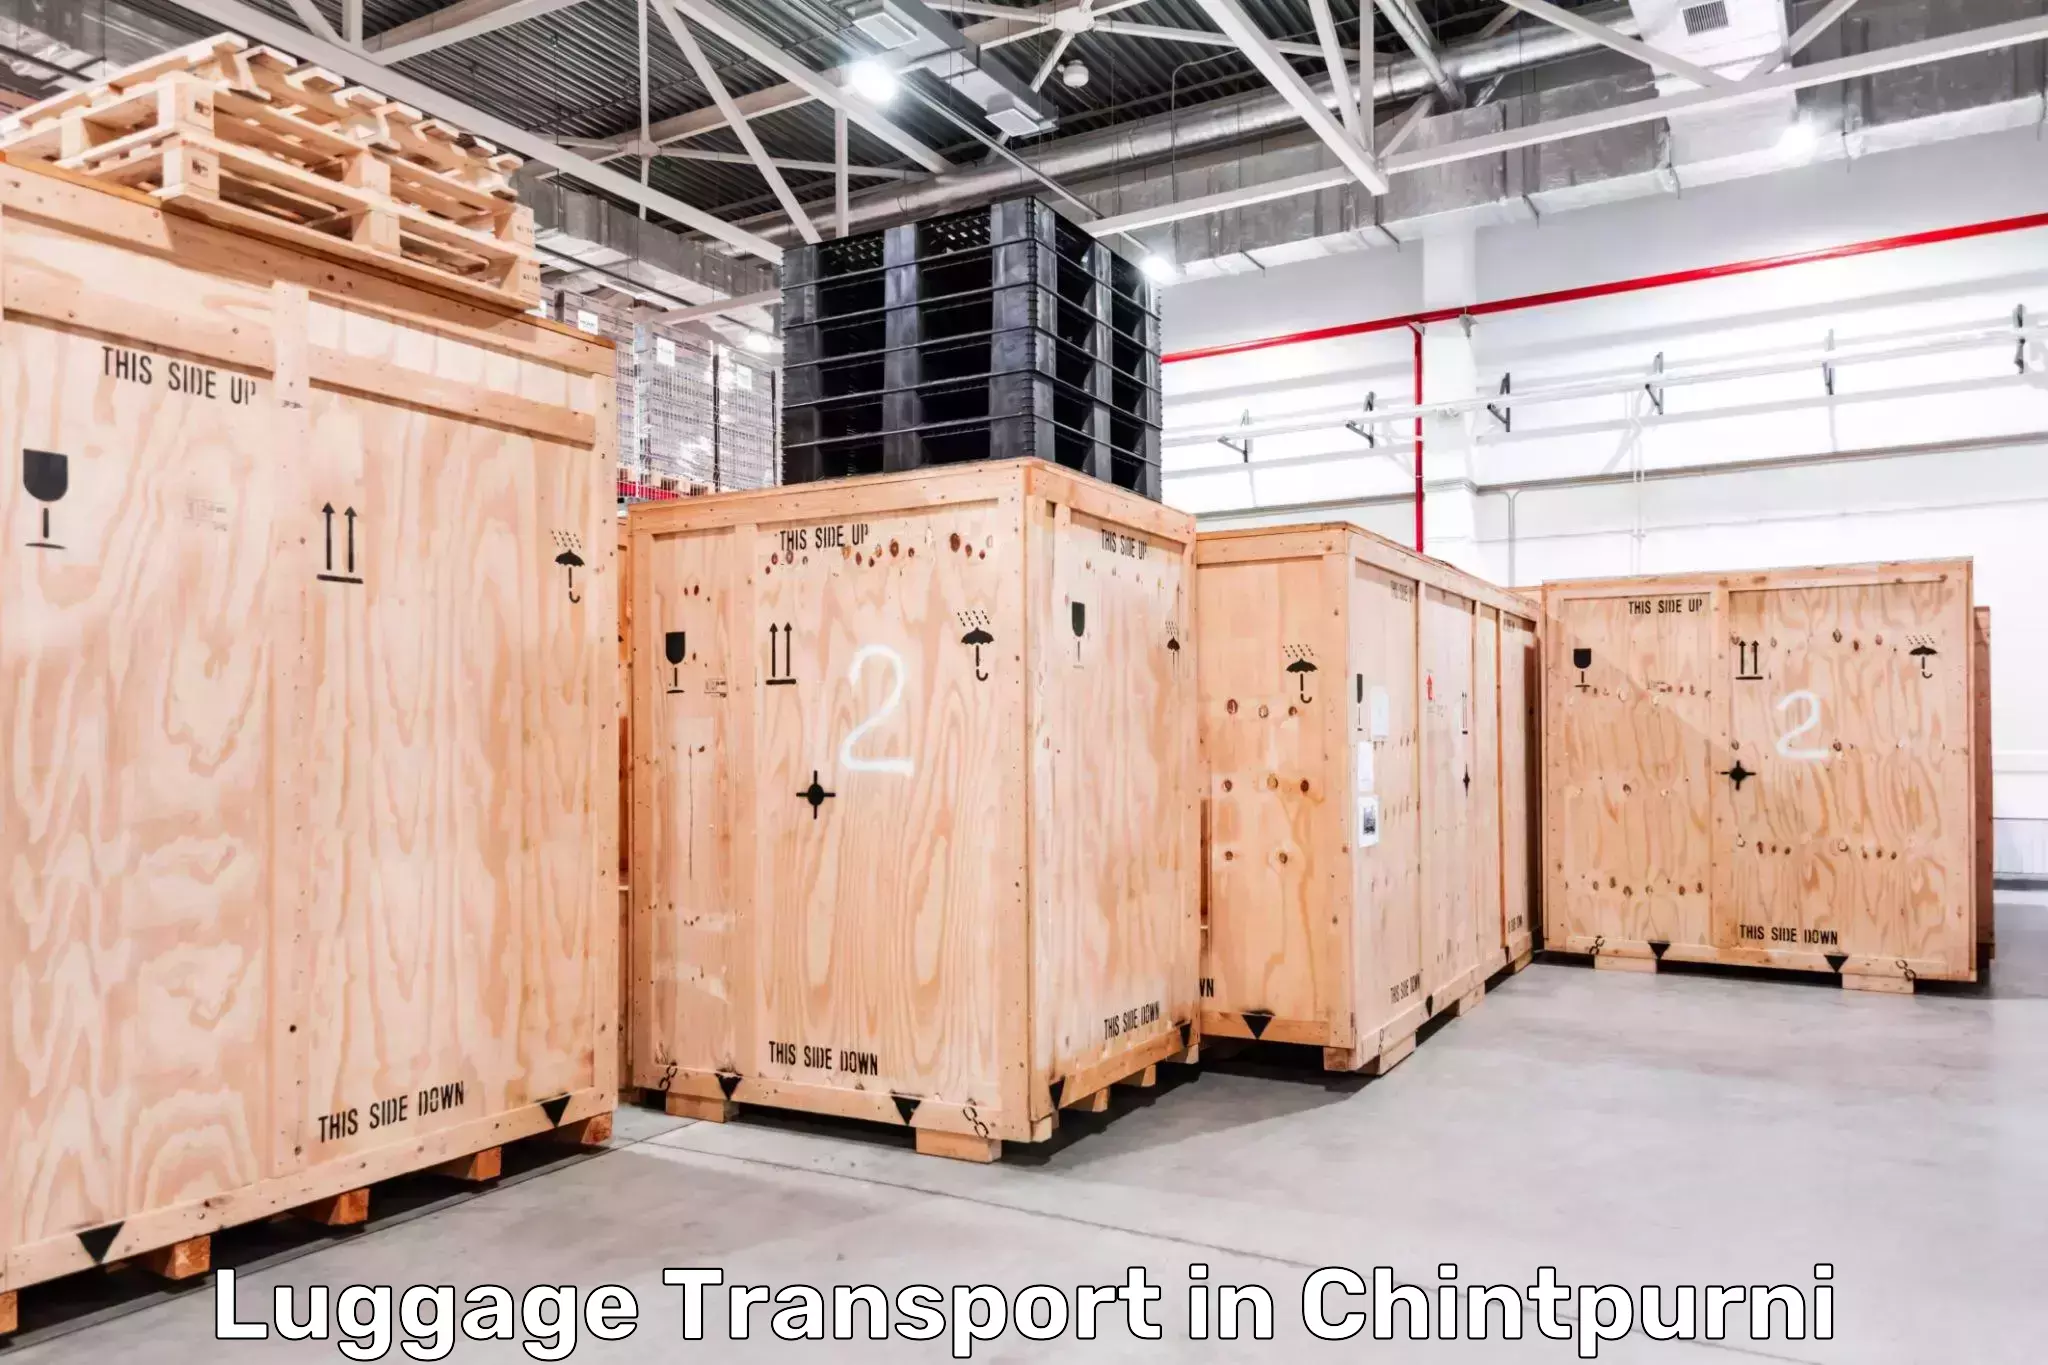 Urban luggage shipping in Chintpurni